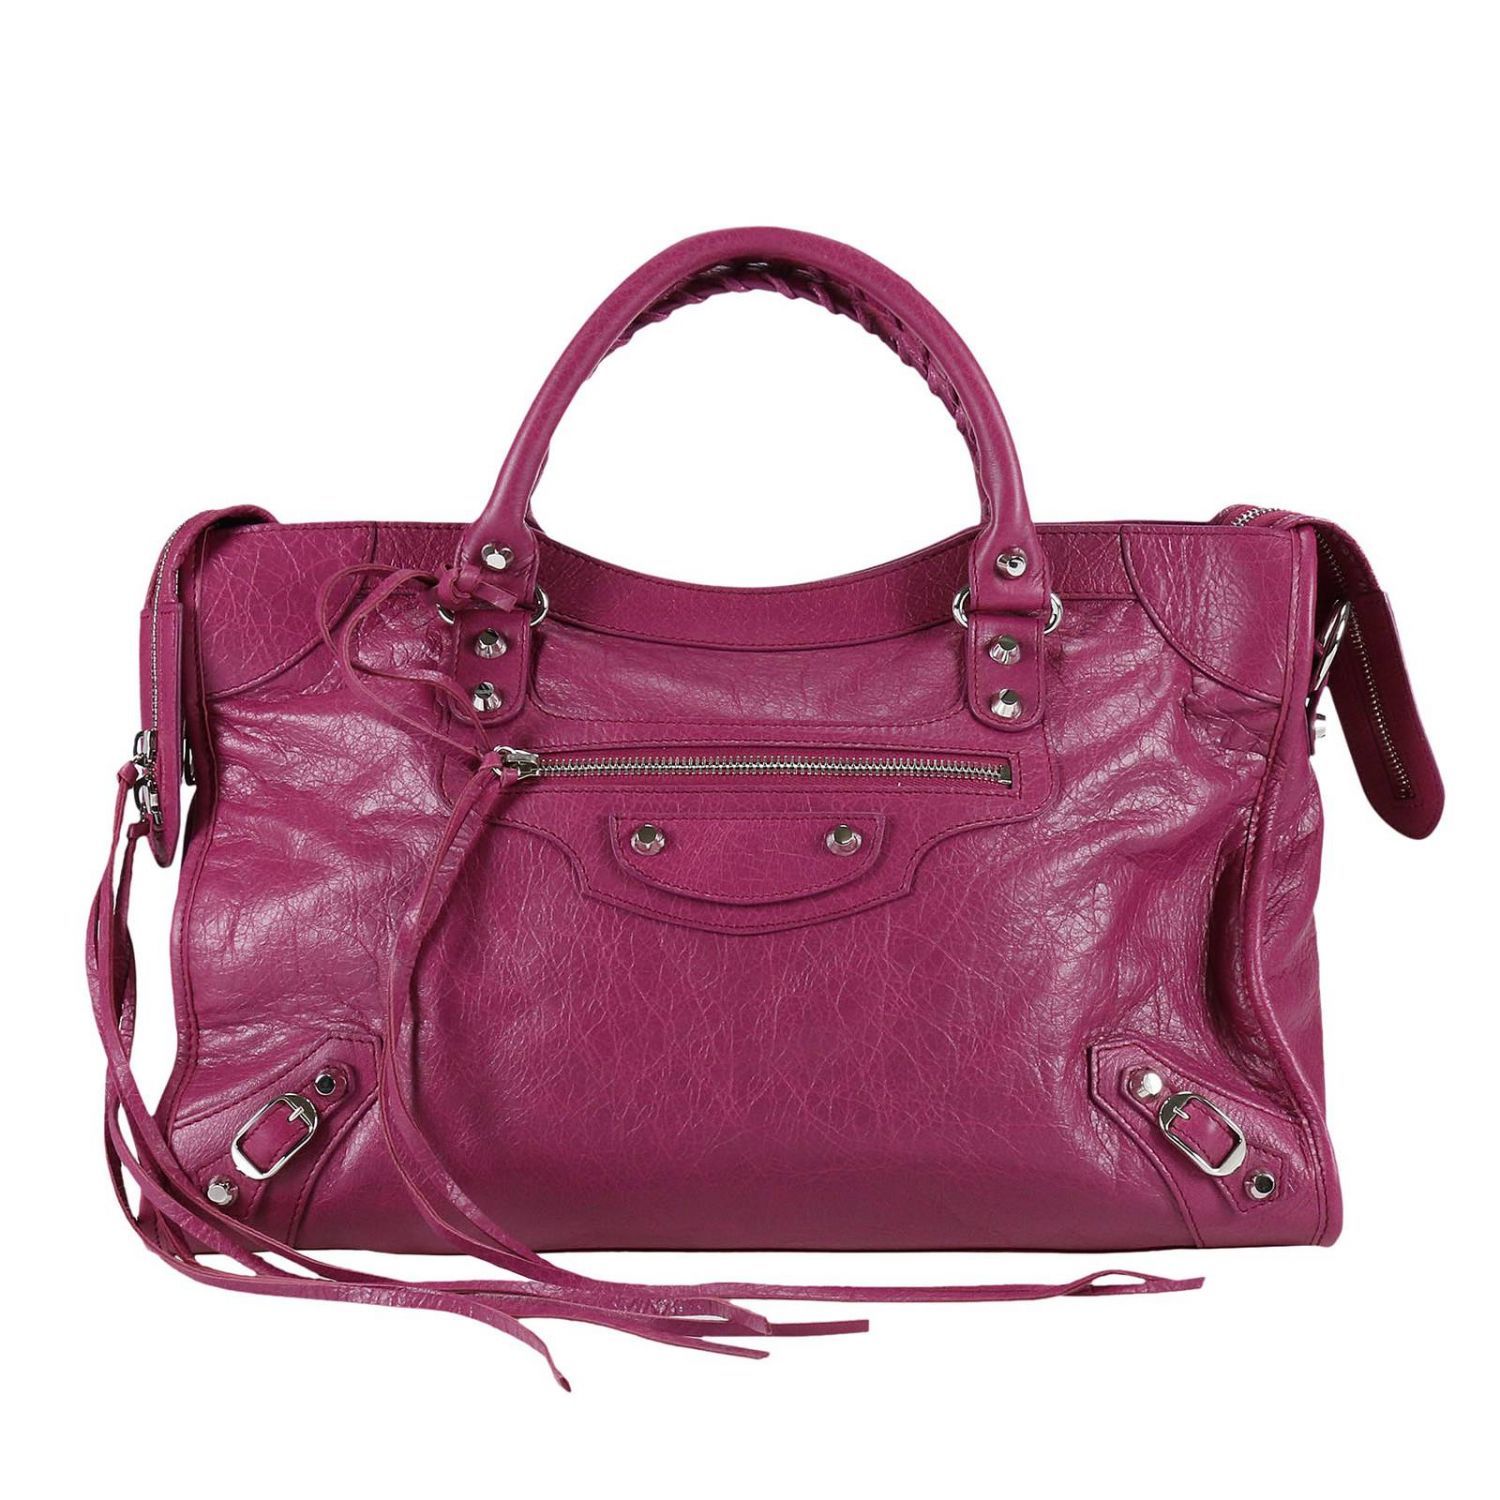 Balenciaga - Handbag Handbag Women Balenciaga - fuchsia, Women's Totes ...